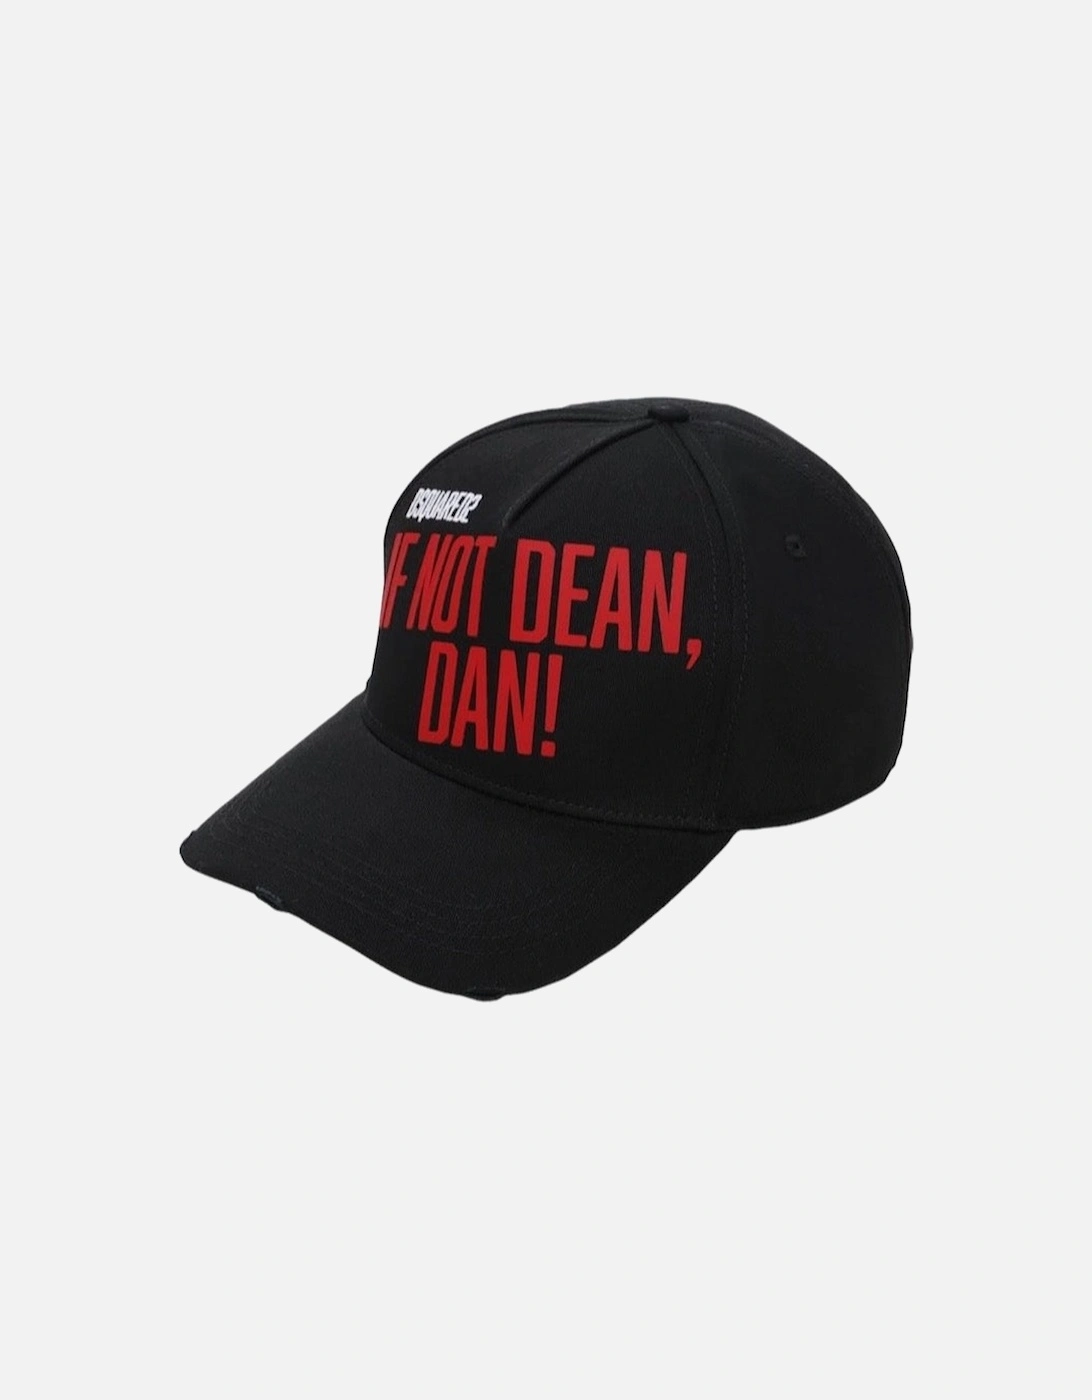 If Not Dean, Dan! Baseball Cap in Black, 6 of 5